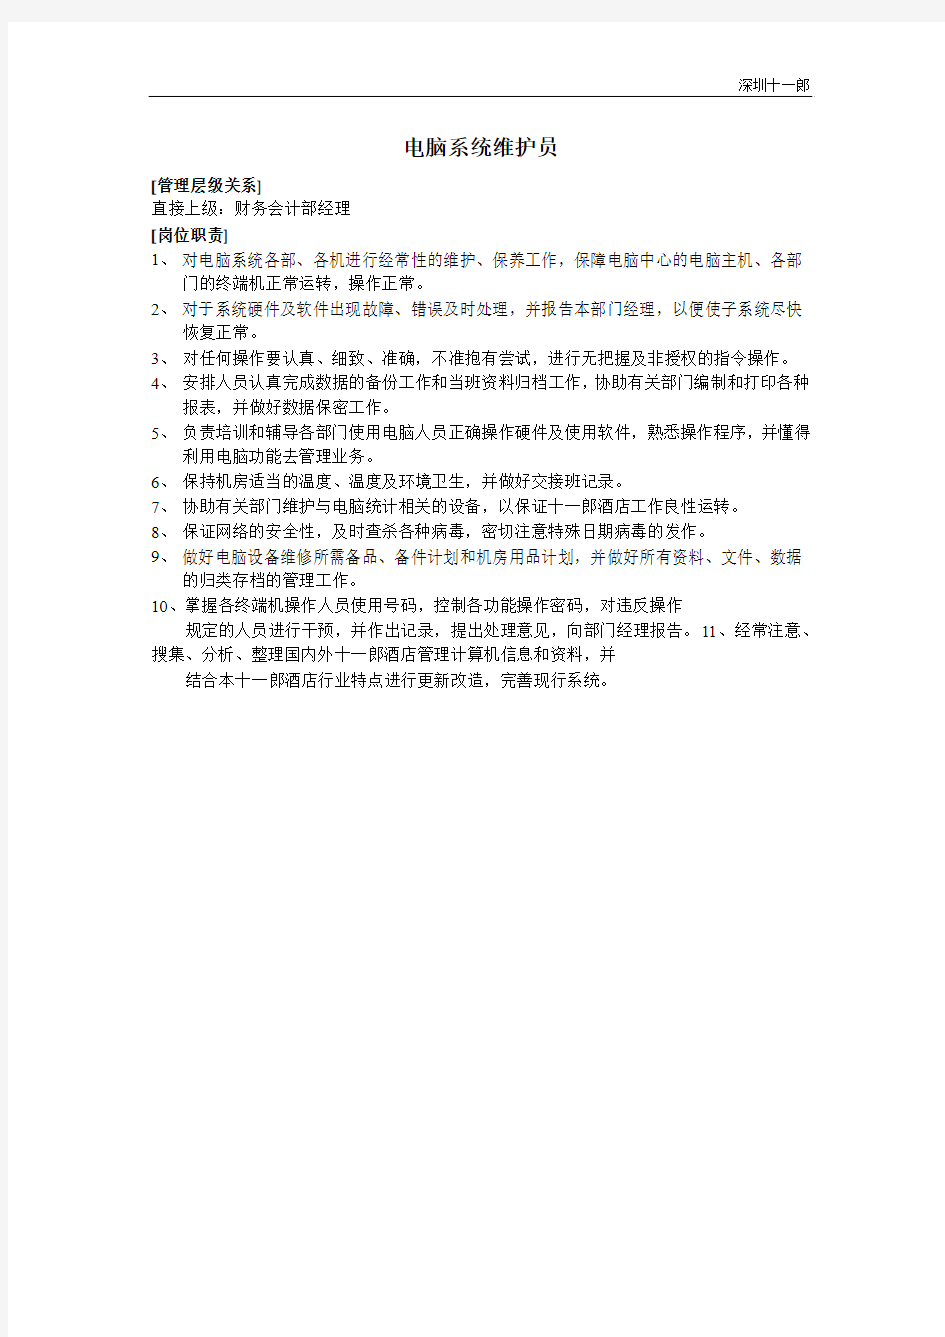 深圳十一郎酒店电脑系统维护员岗位职责